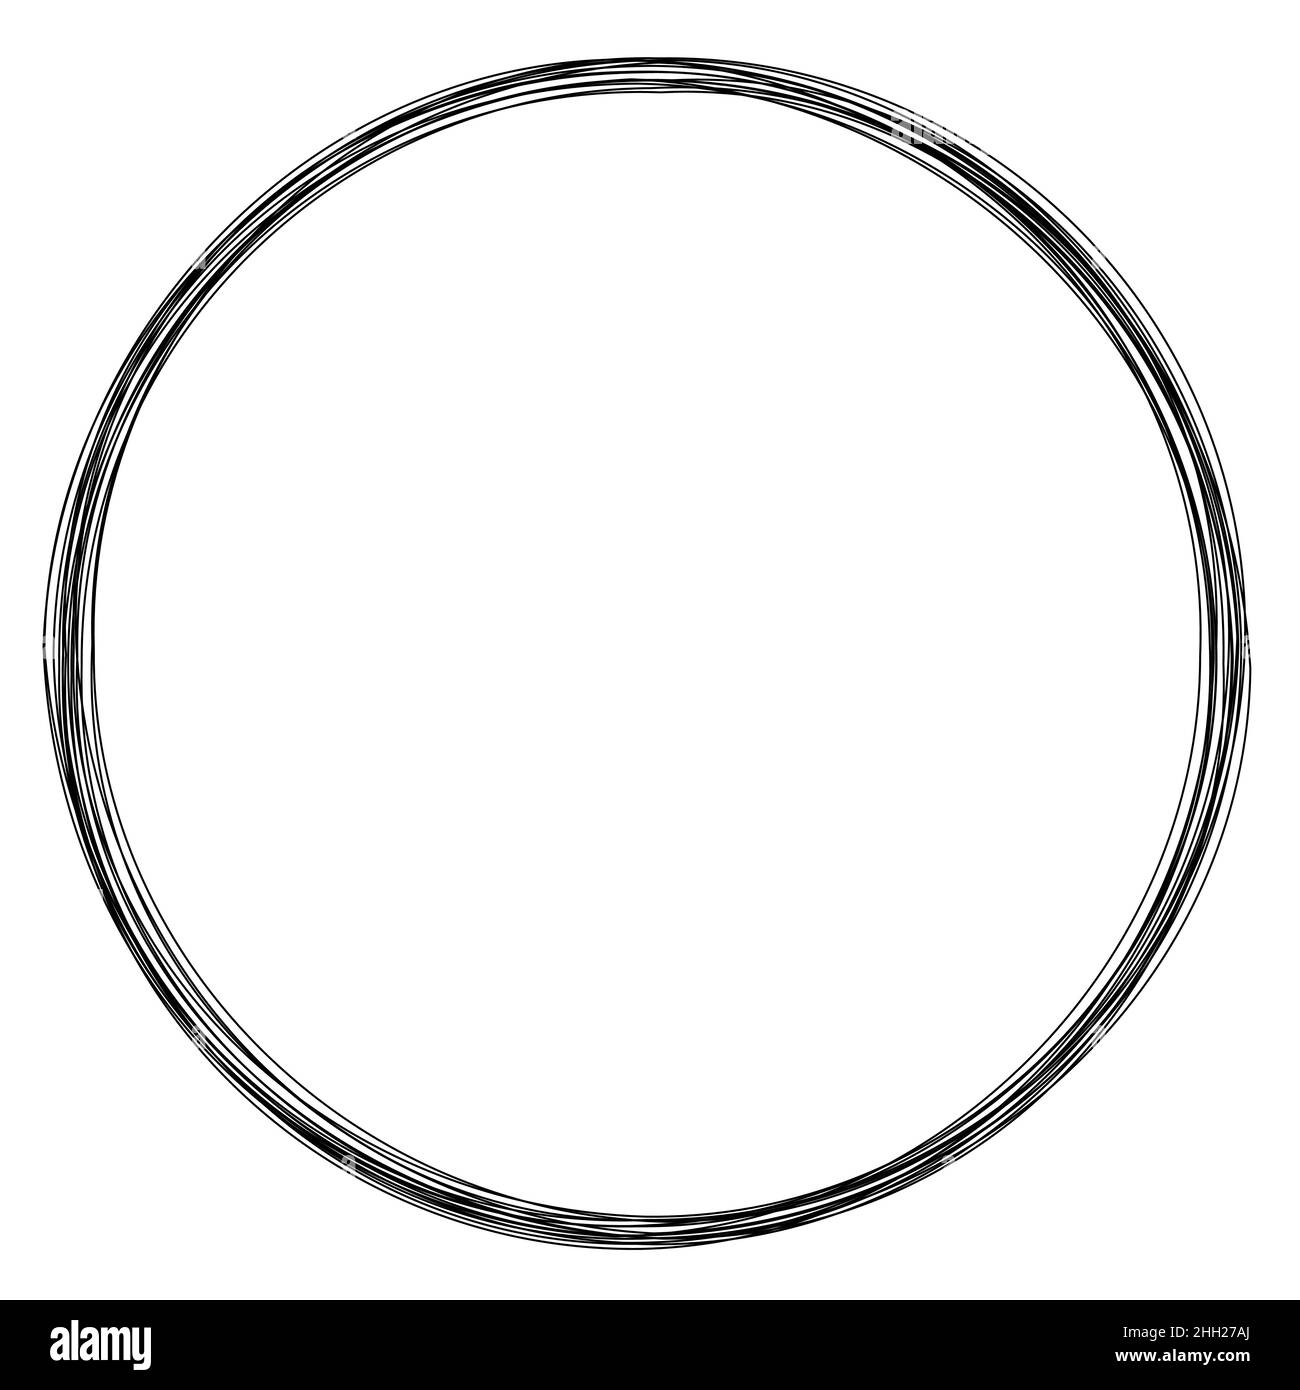 Cadre rond en fil métallique, cadre circulaire noir Image Vectorielle Stock  - Alamy